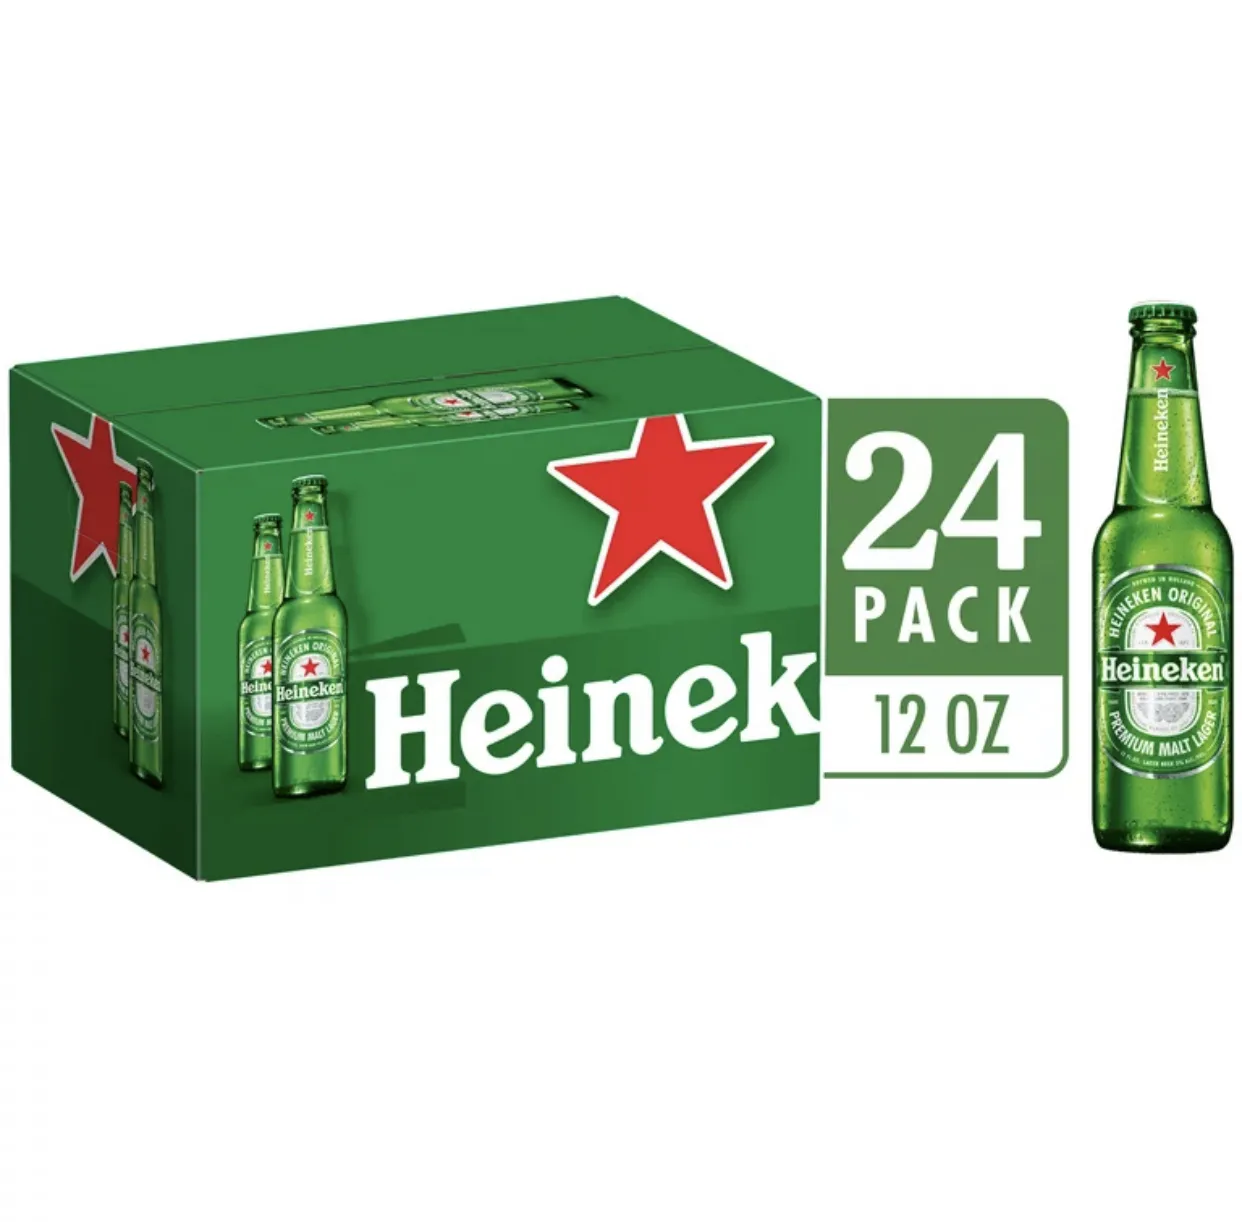 بسعر الجملة هالندي هاينيكن الكحولية الأصلية ليجار بيرة عالية الجودة - 24 حزمة / 12 أونصة سائلة الزجاجات